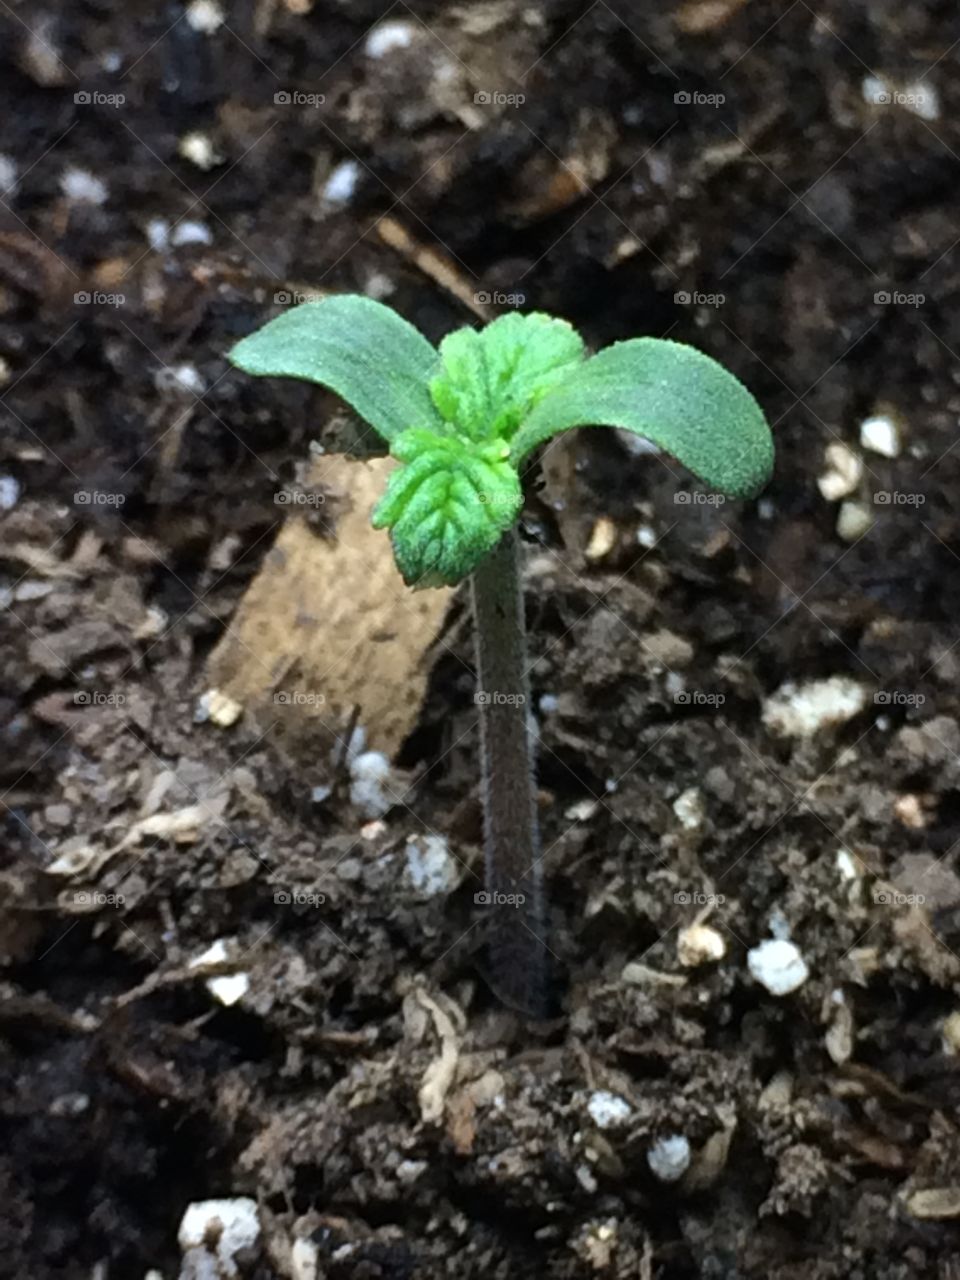 Weed small marihuana beautiful plants green 420 cultivo indoor bajo consumó marijuana 